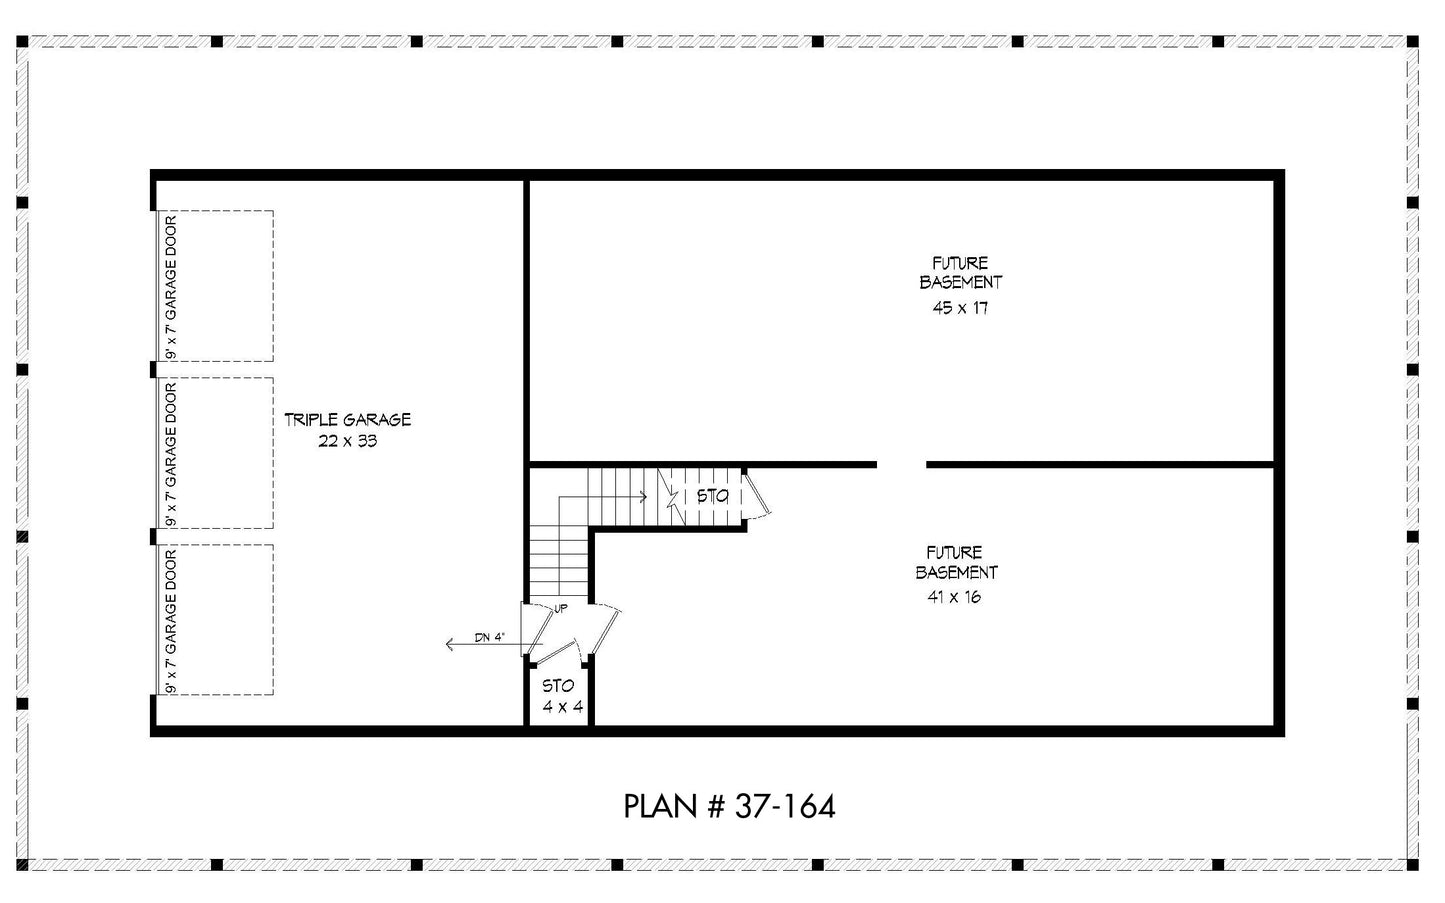 BASEMENT FLOOR PLAN - 37-164 Floor_Plan